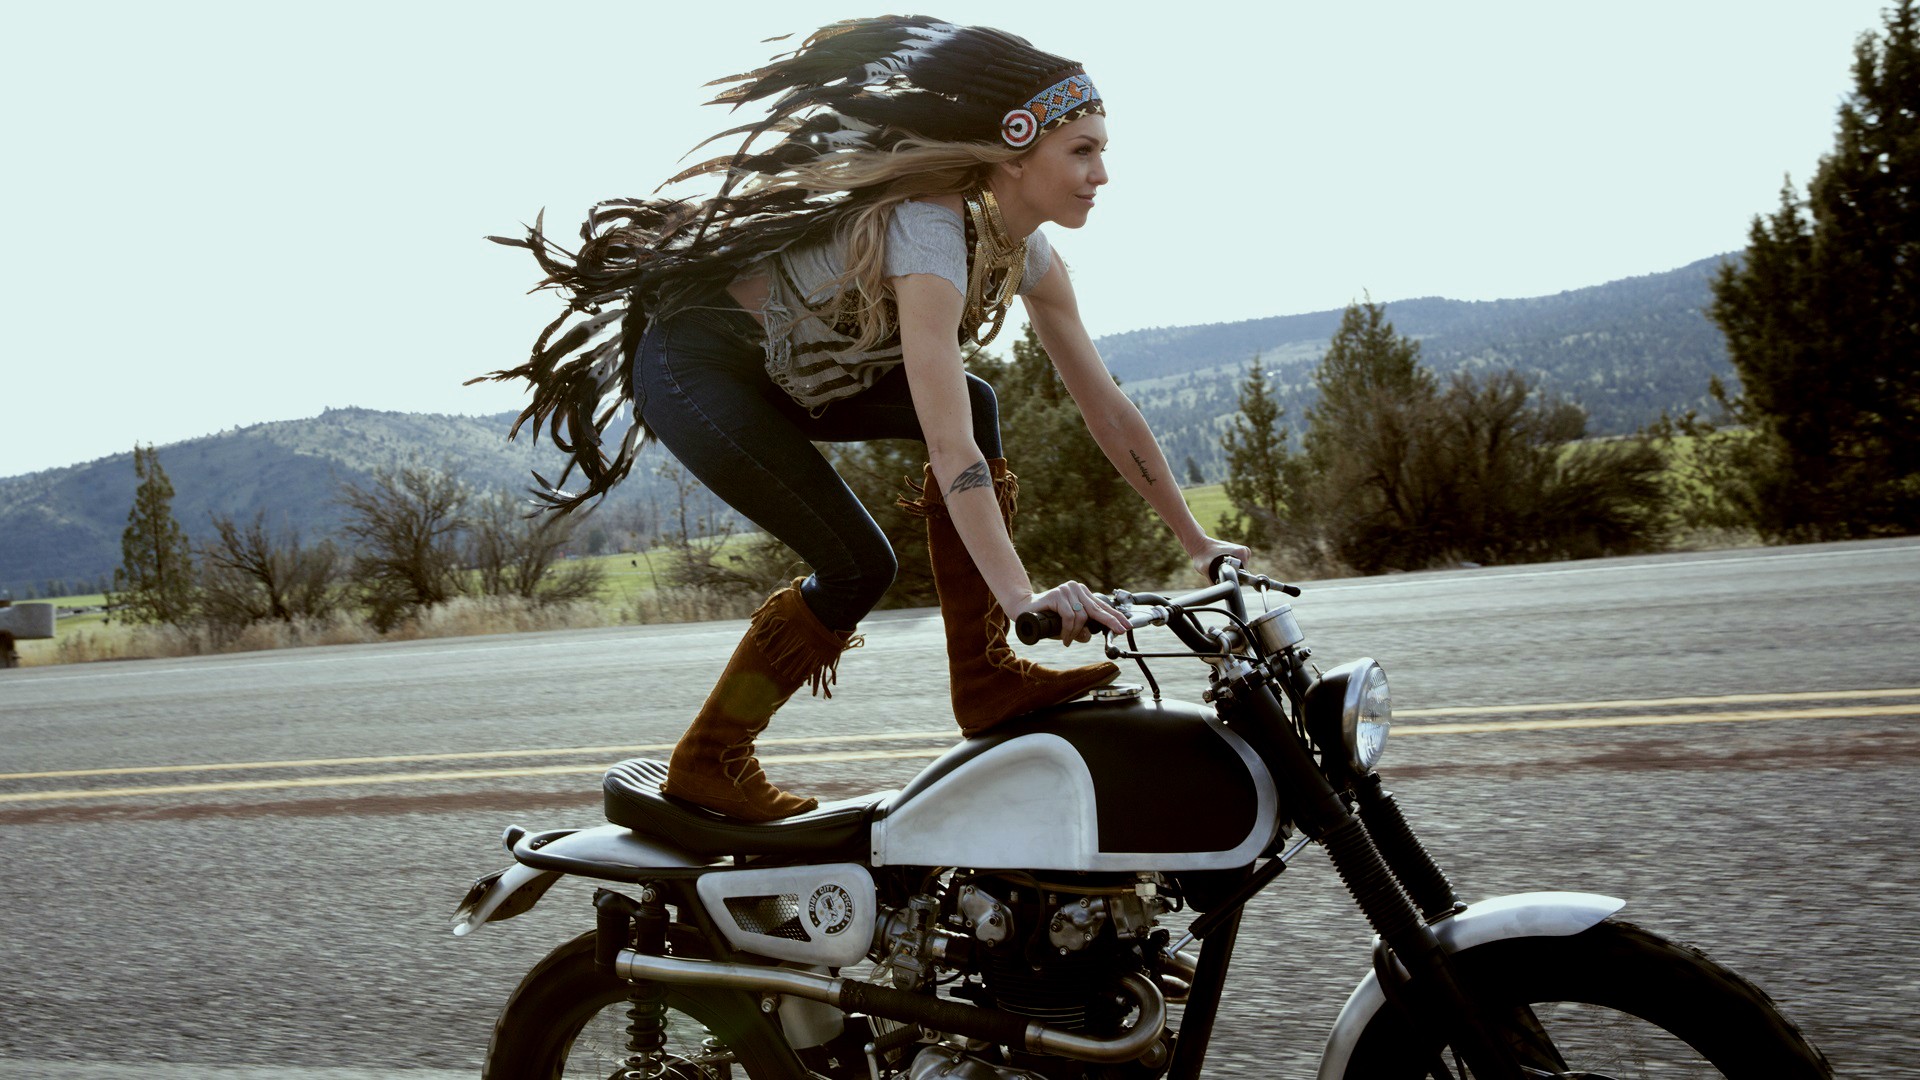 Indian Speeder Bike Women With Bikes Stunts Tattoo Blonde Motorcycle Motorcyclist Women With Motorcy 1920x1080